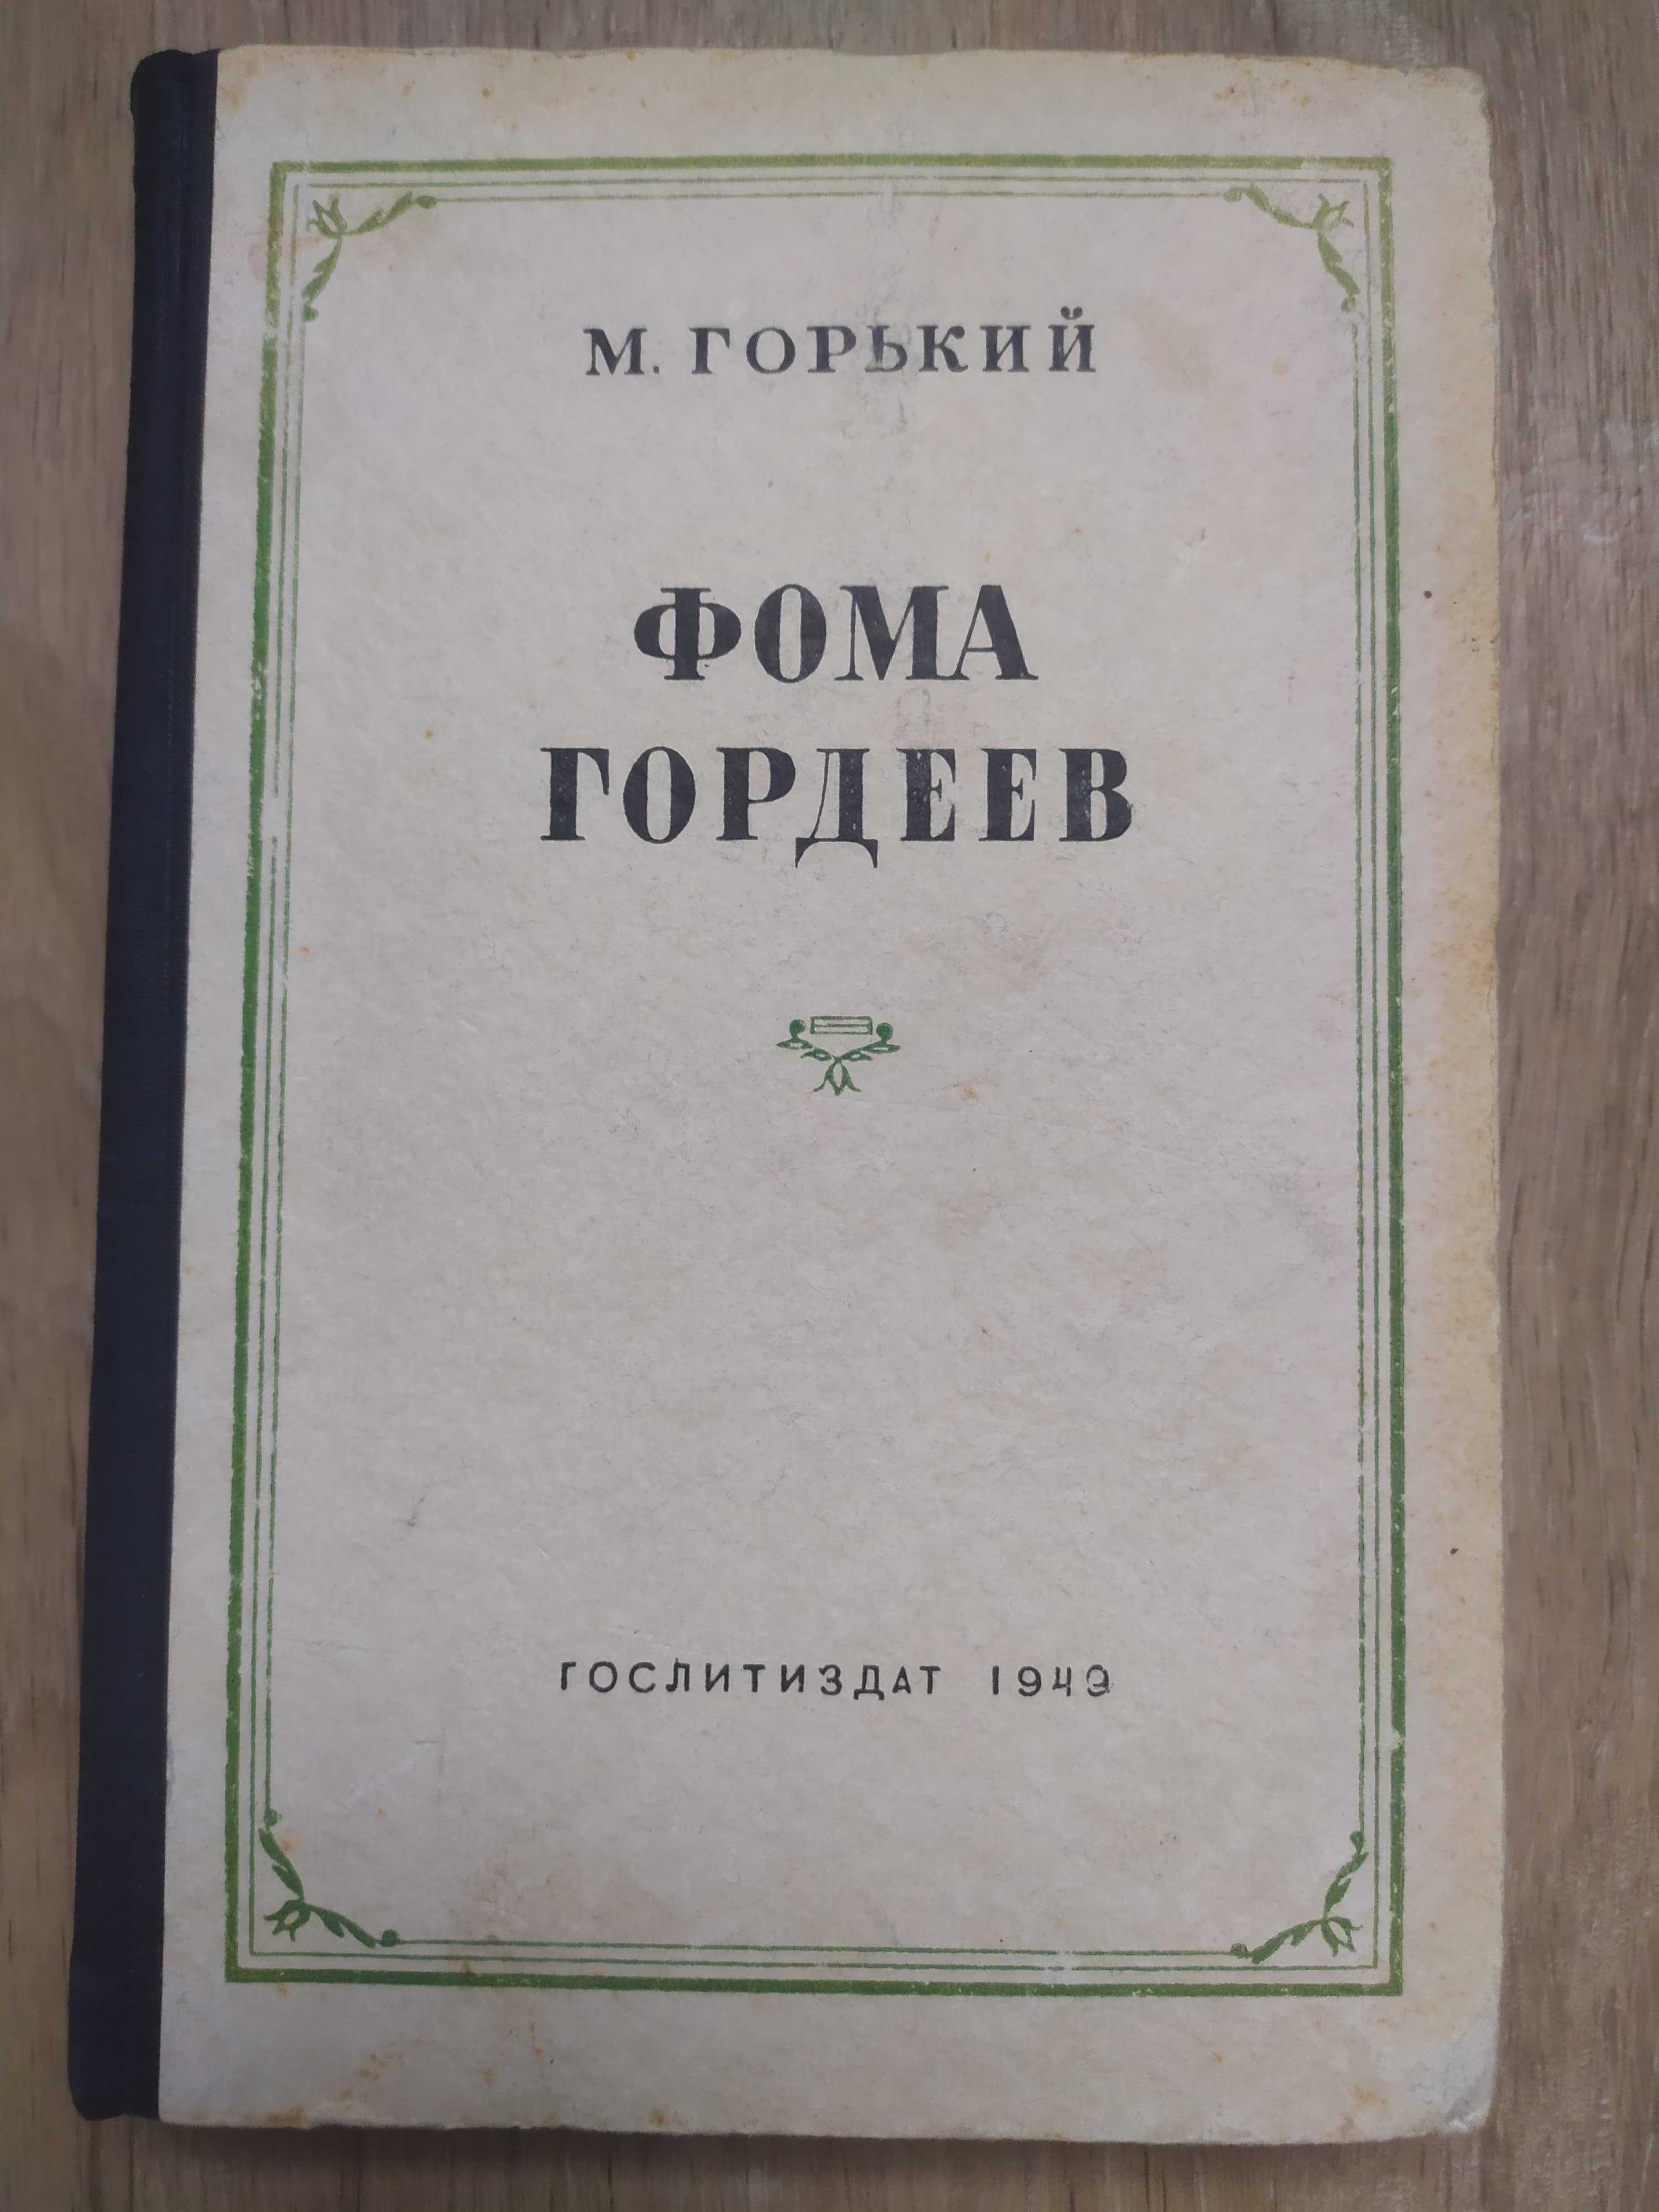 Книга М.Горький ОГИЗ 1946г.